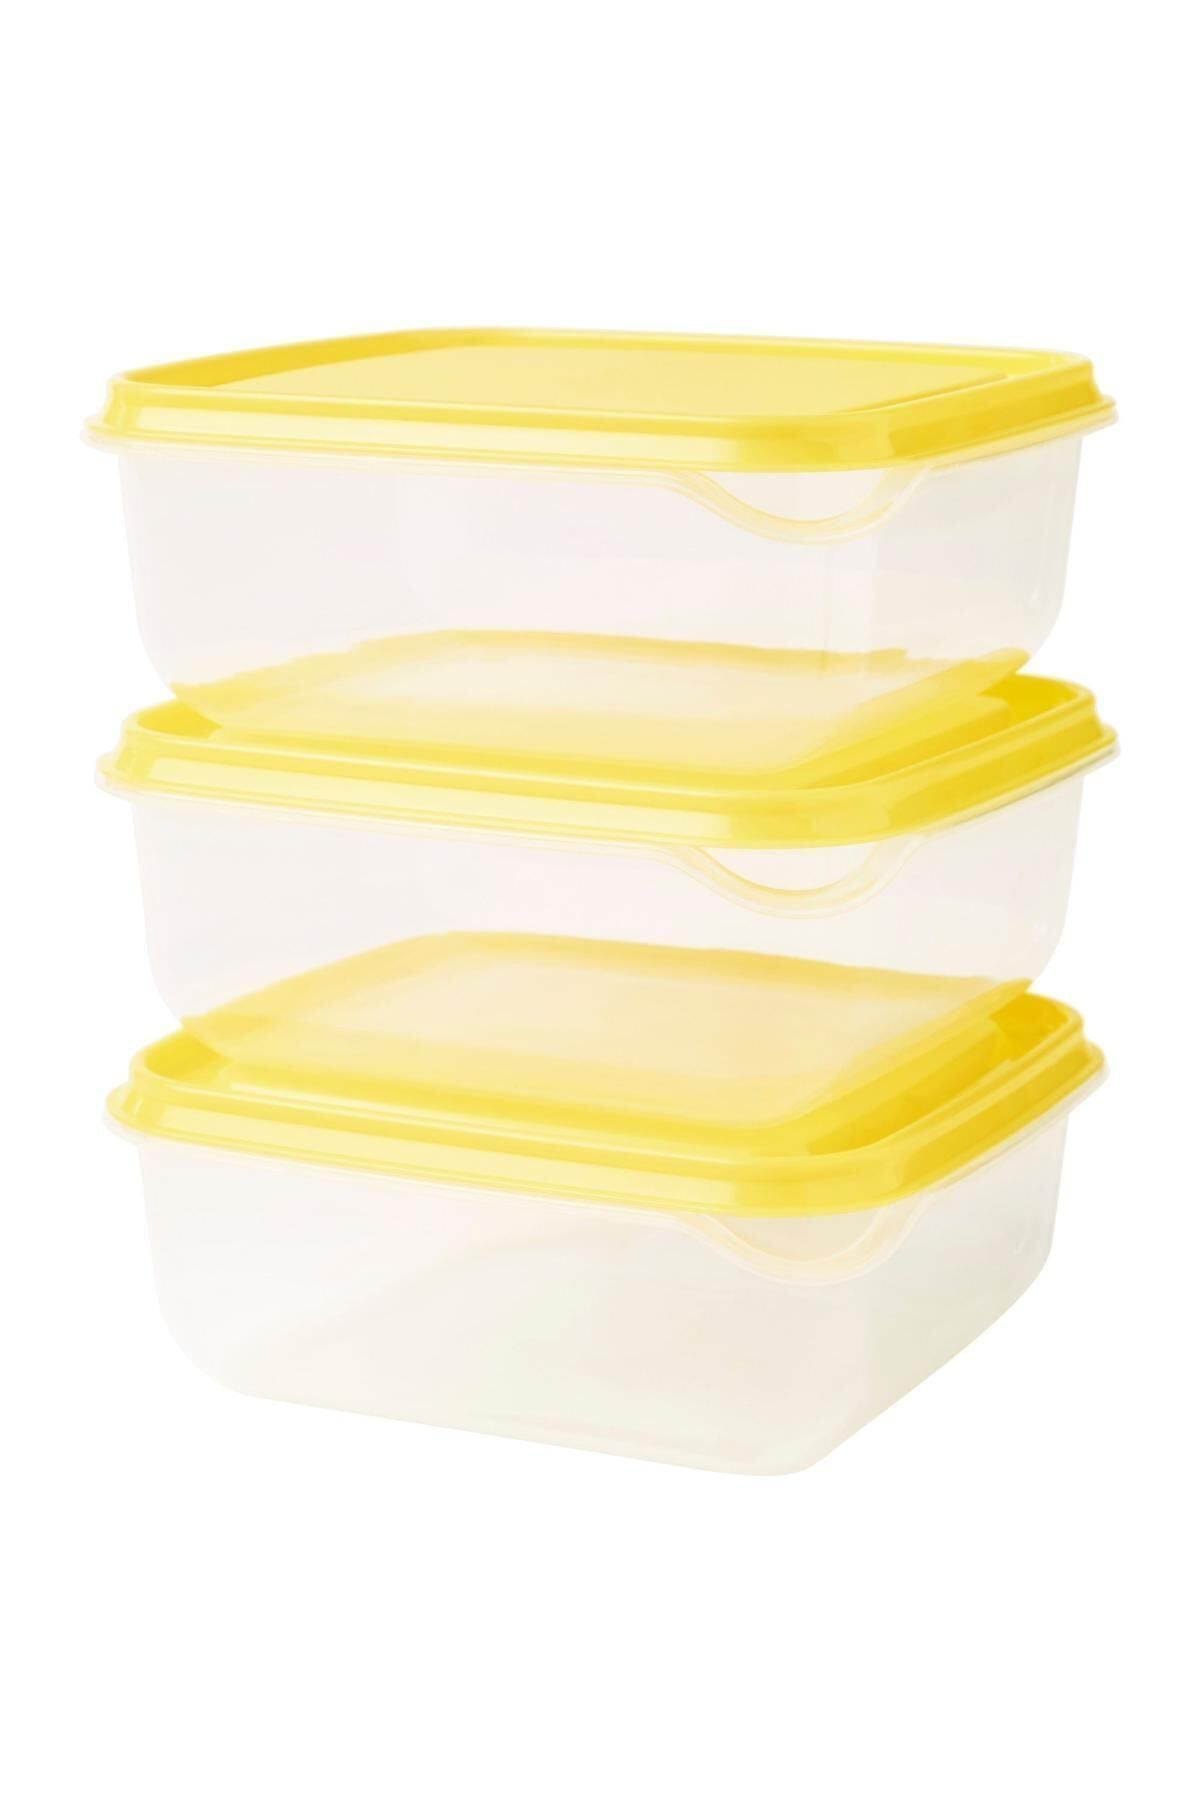 IKEA Pruta Saklama Kabı 3lü Set 0.6 Lt Sarı Renk Çok Amaçlı Özelliği 3 Adet Sarı Kapak Sarı Kap